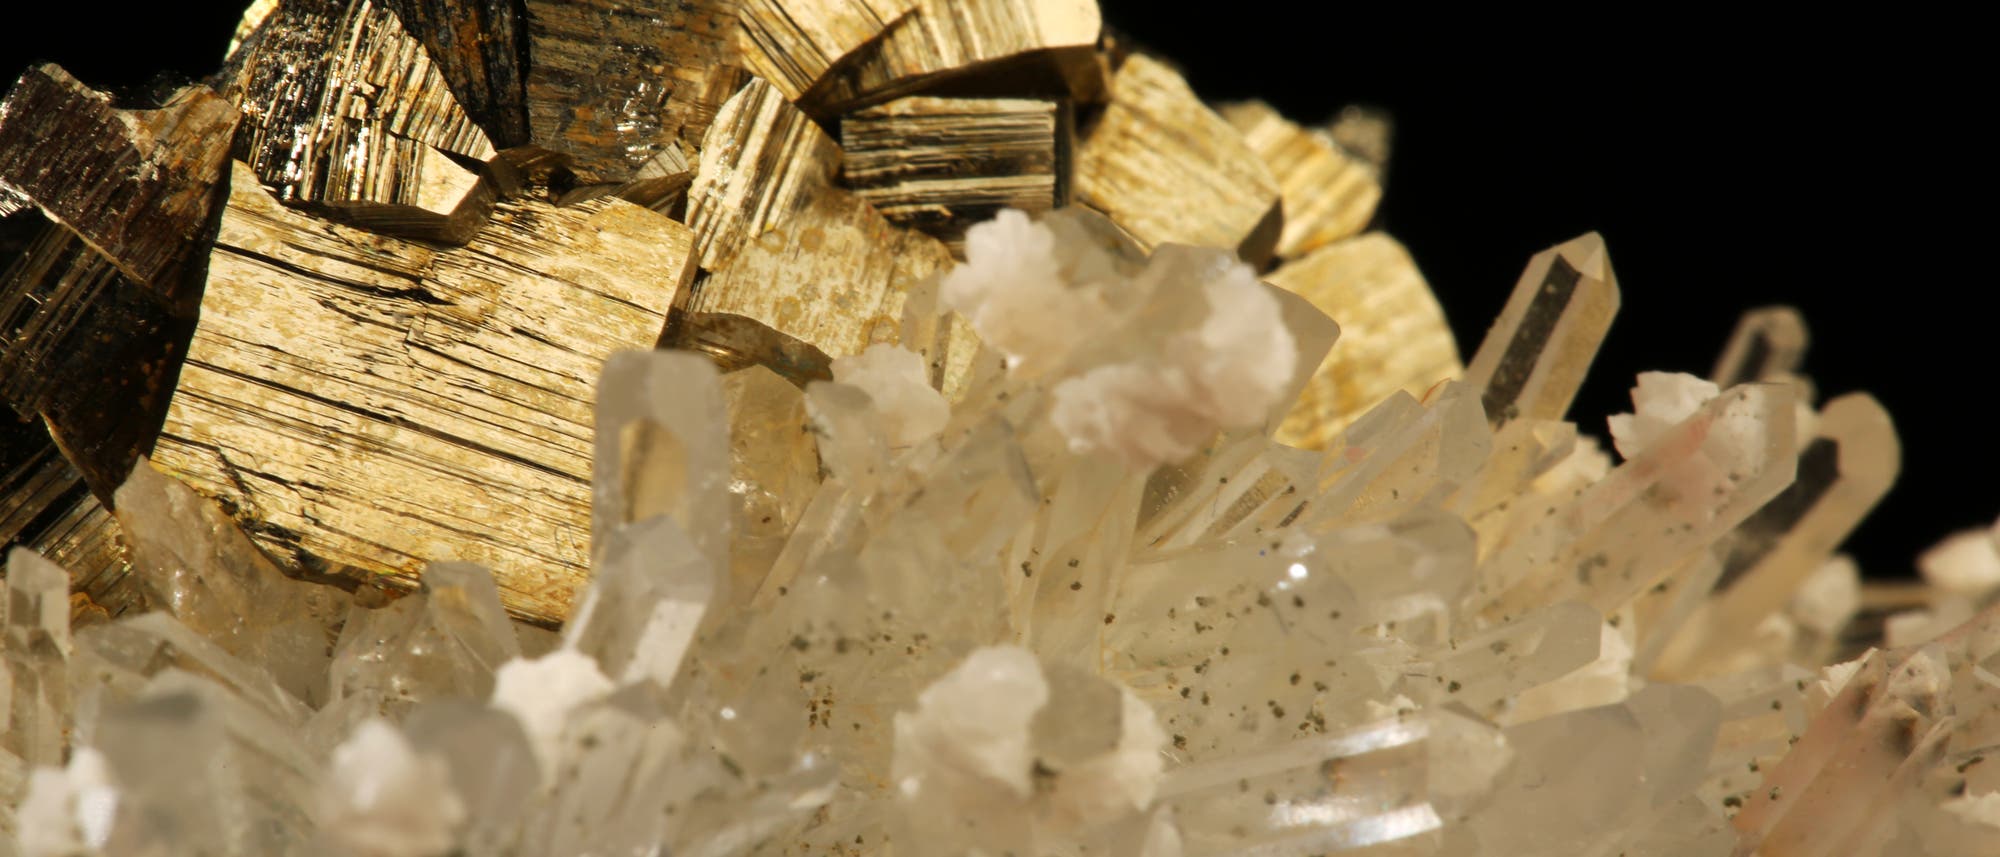 Pyrit - auch als Katzengold bekannt - mit einem Bergkristall